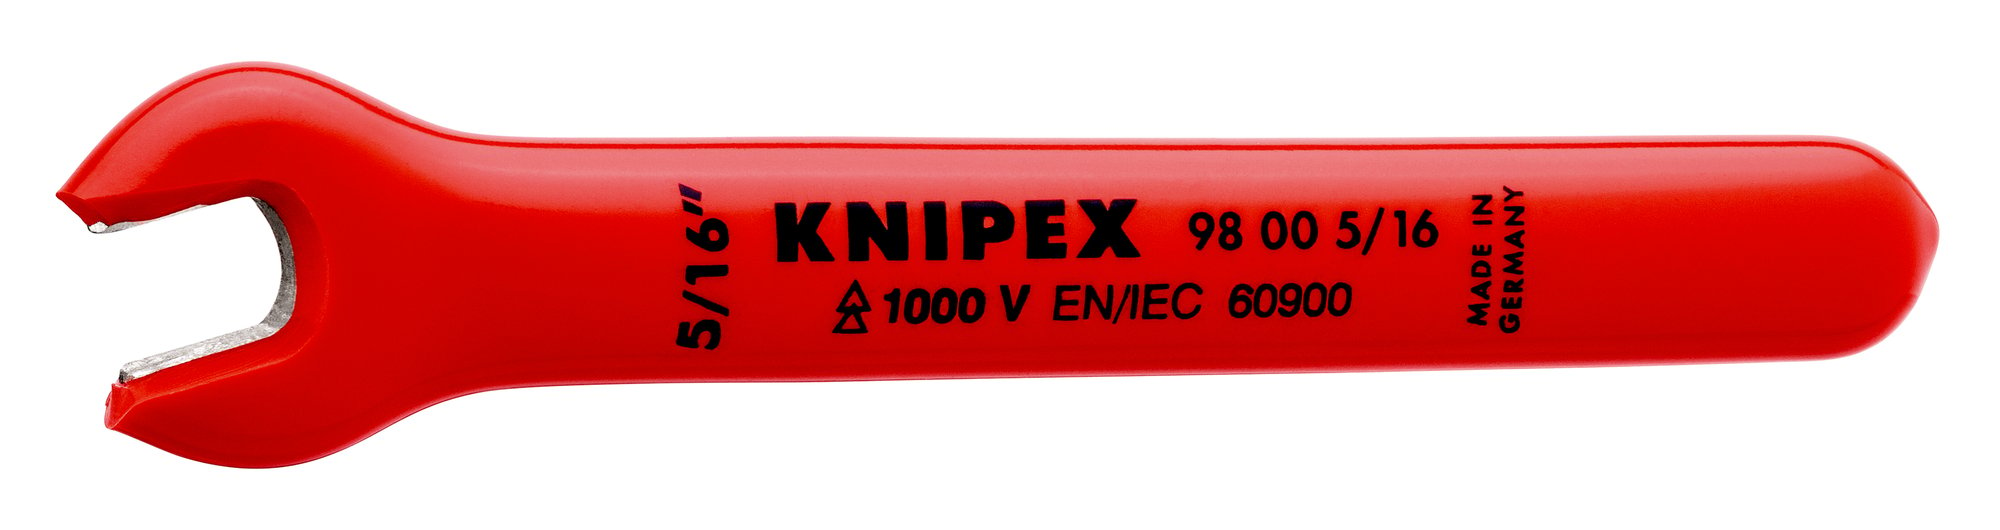 E-shop KNIPEX Lic maticový, otvorený, jednostranný 98005/16"